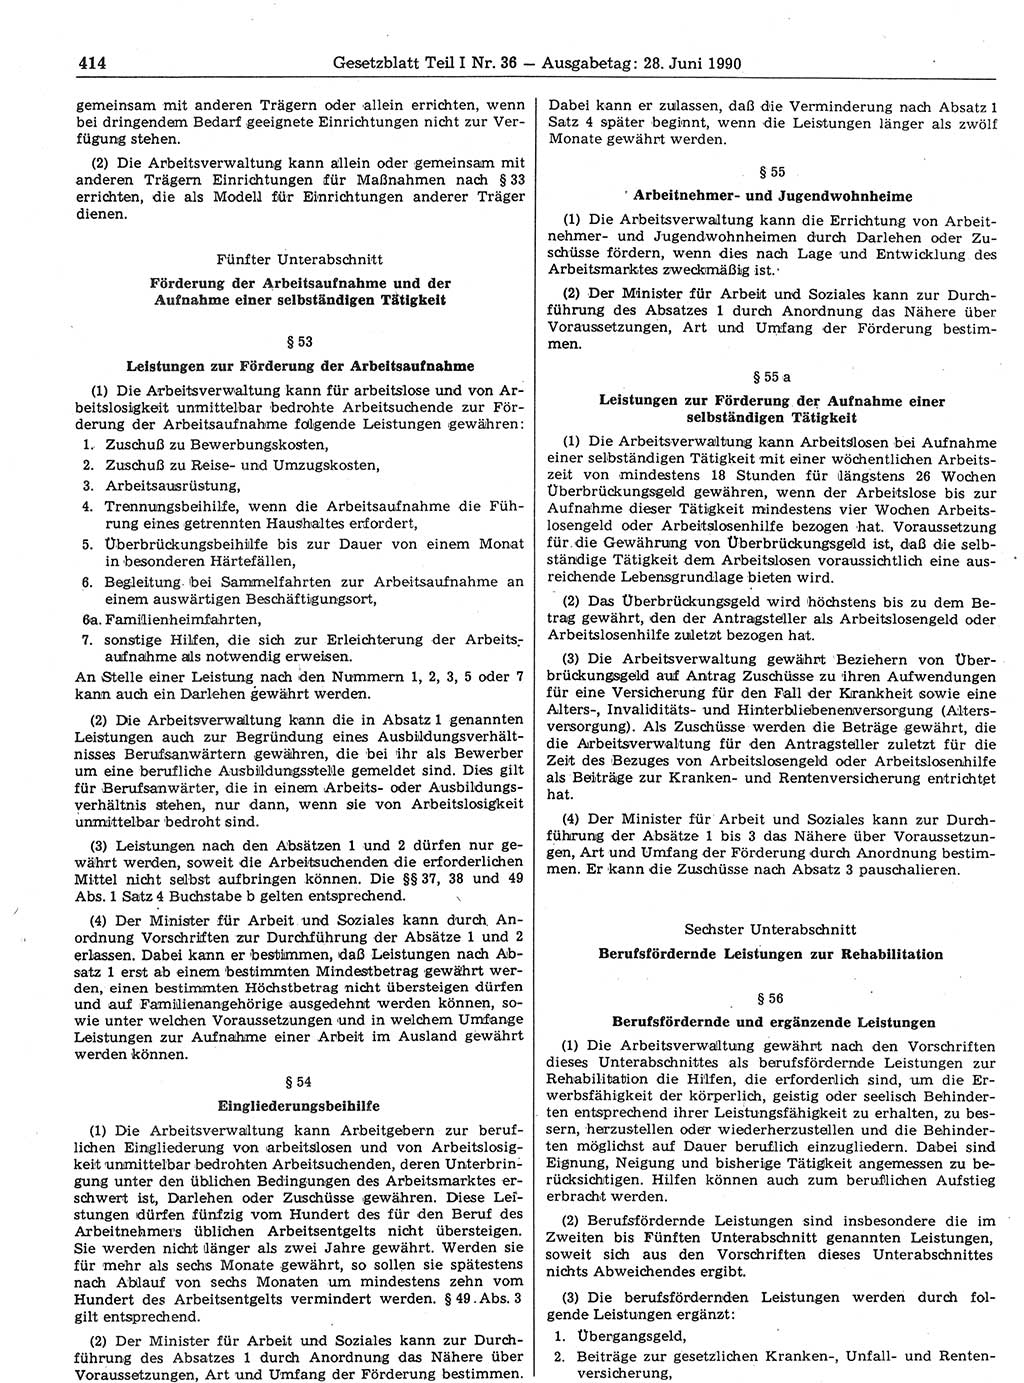 Gesetzblatt (GBl.) der Deutschen Demokratischen Republik (DDR) Teil Ⅰ 1990, Seite 414 (GBl. DDR Ⅰ 1990, S. 414)